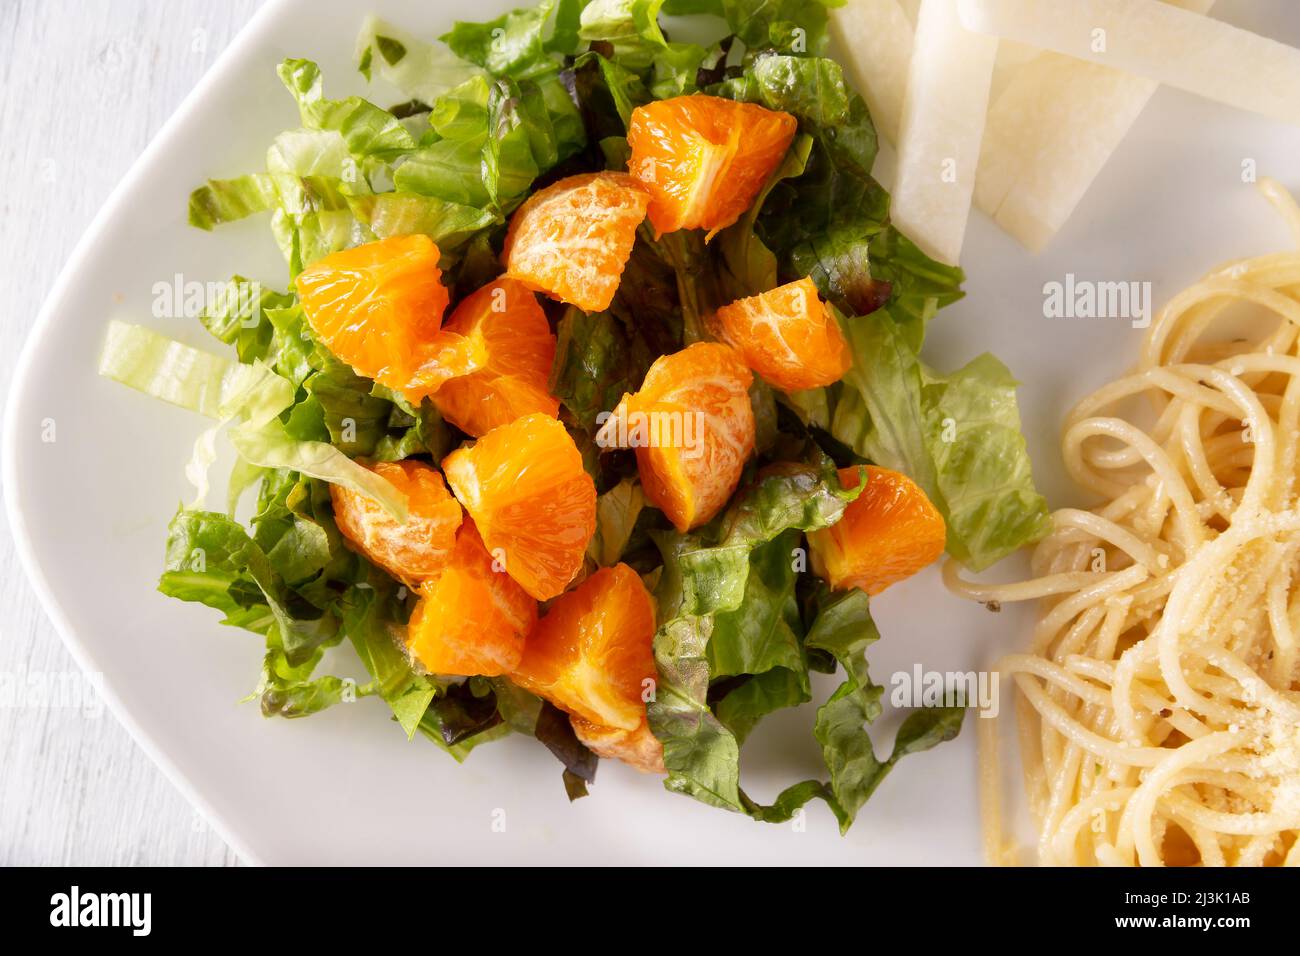 Salade de laitue et de mandarines fraîches, accompagnée de jicama 'Pachyrhizus erosus' également connu sous le nom de haricot mexicain ou navet mexicain. Gros plan. Top vie Banque D'Images